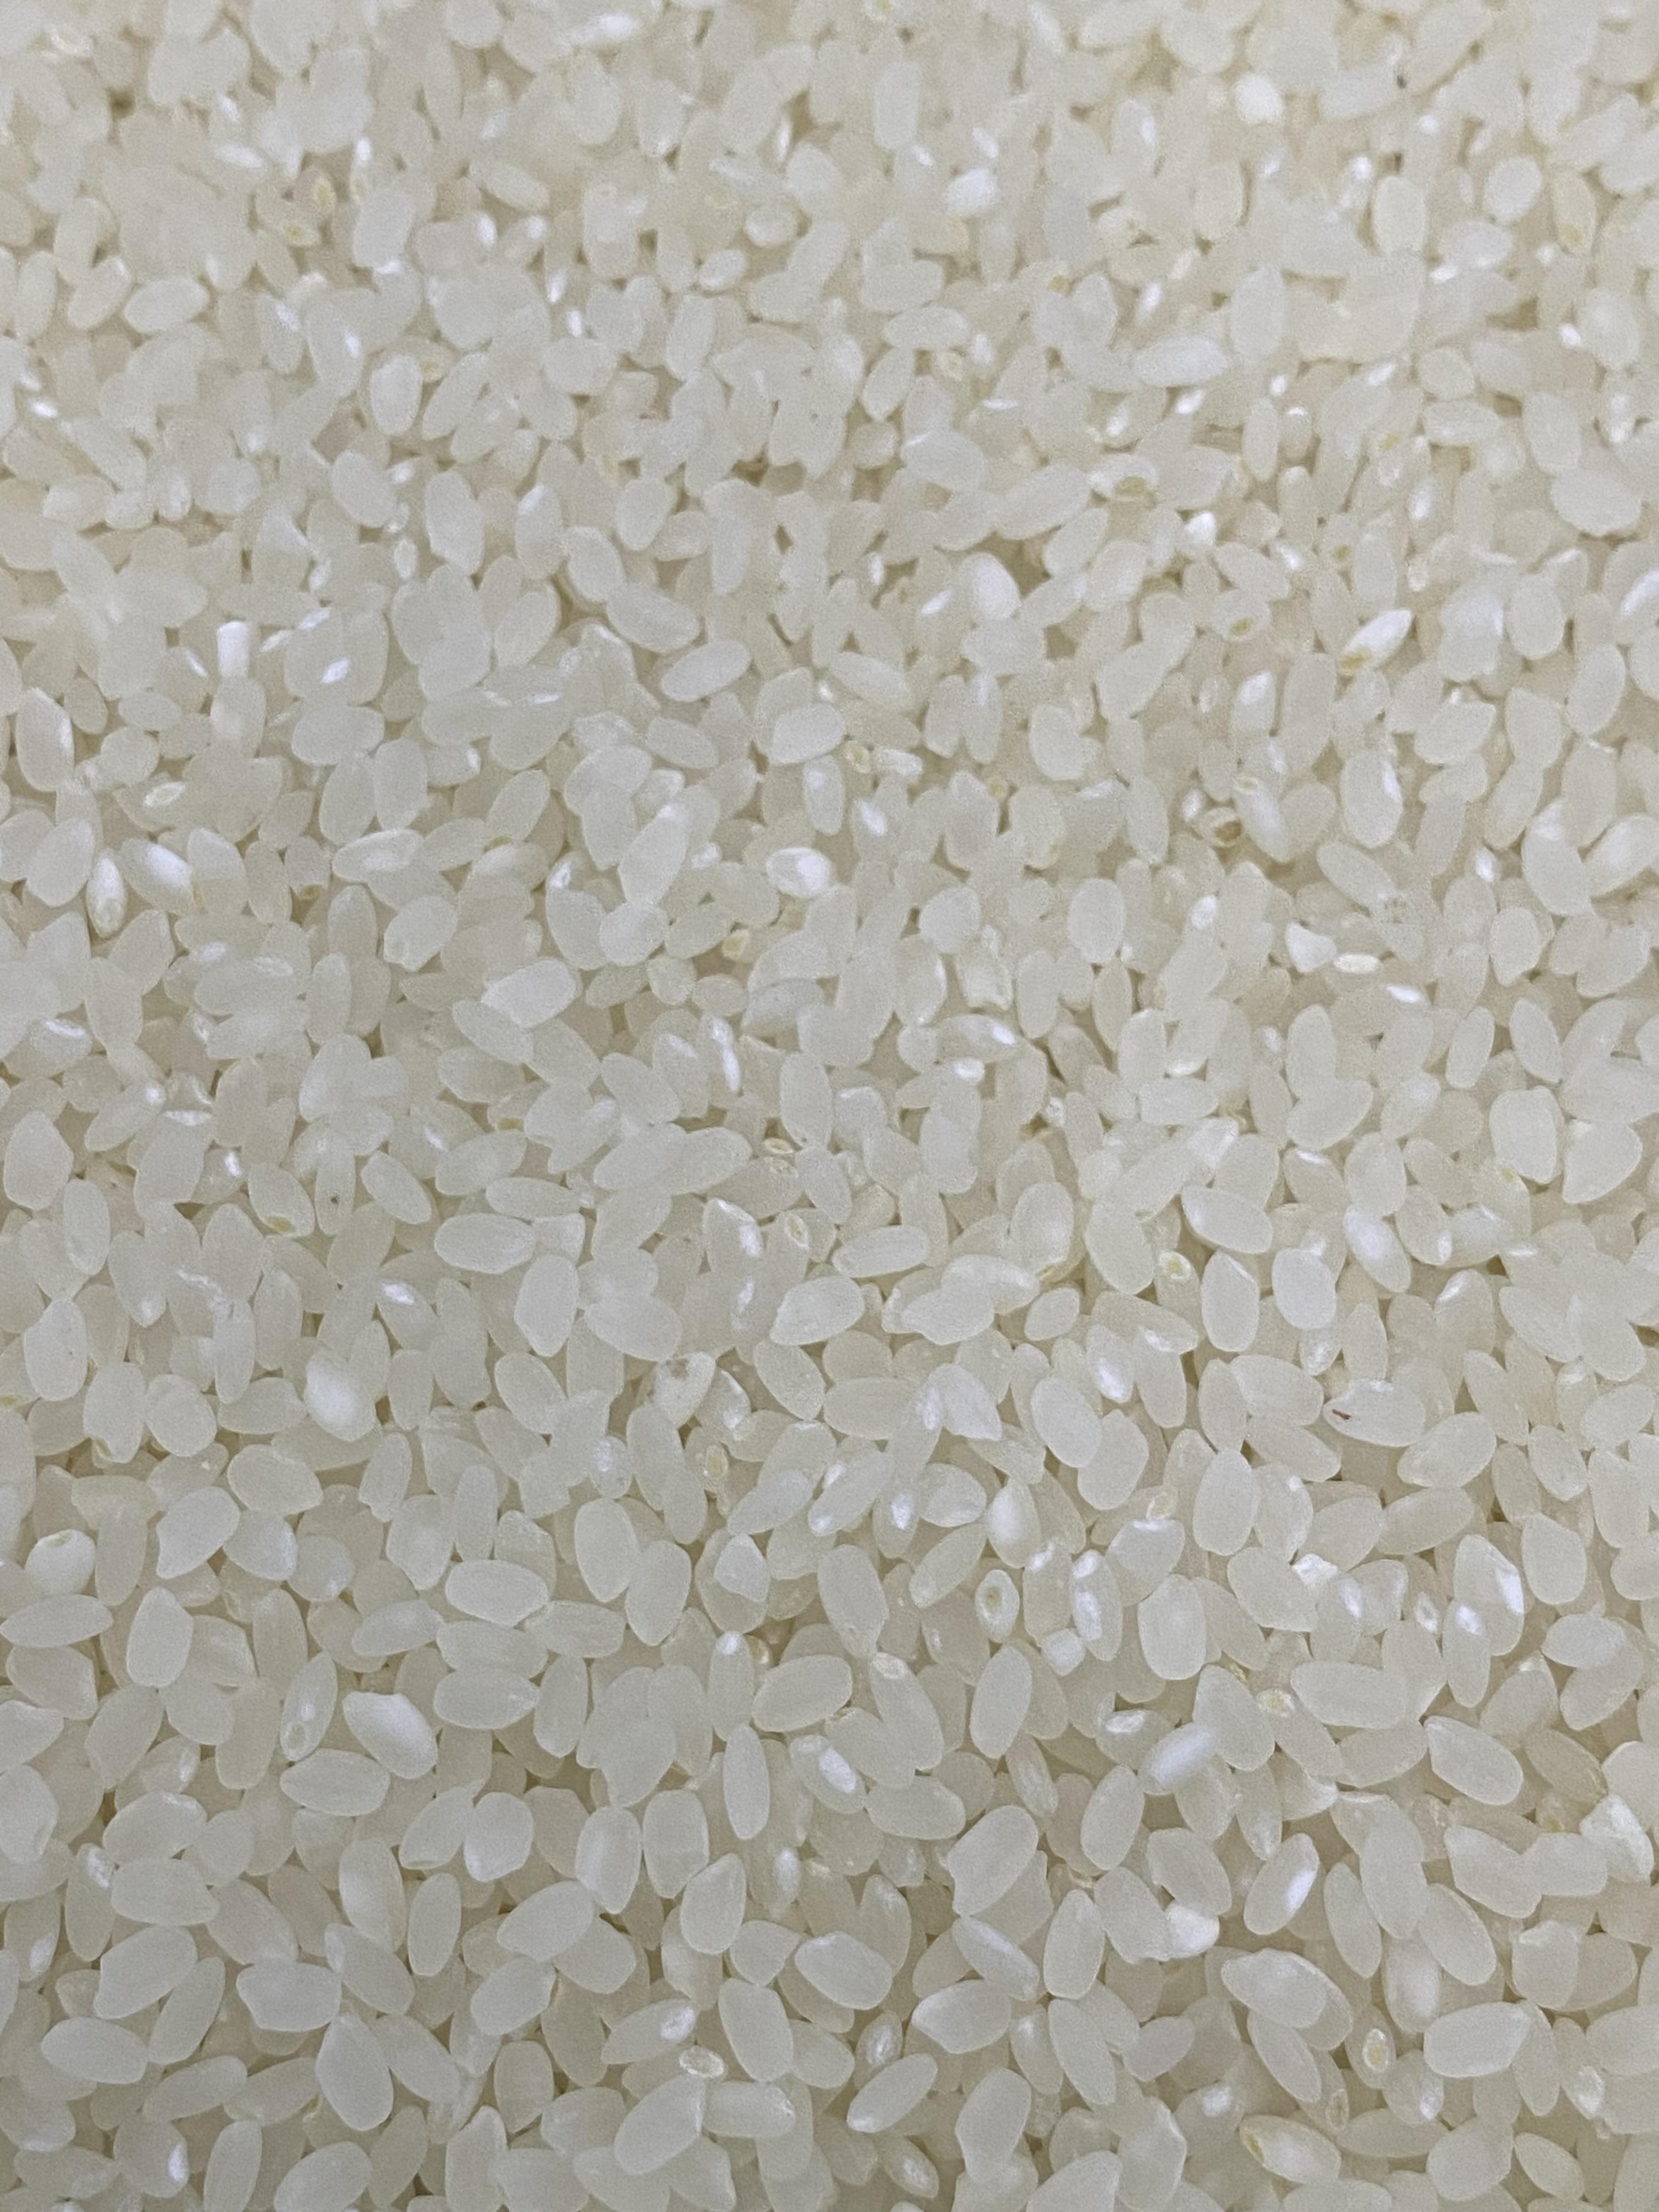 (정남진농협) GAP인증 신선하고 맛있는 23년 쌀 새청무 20kg